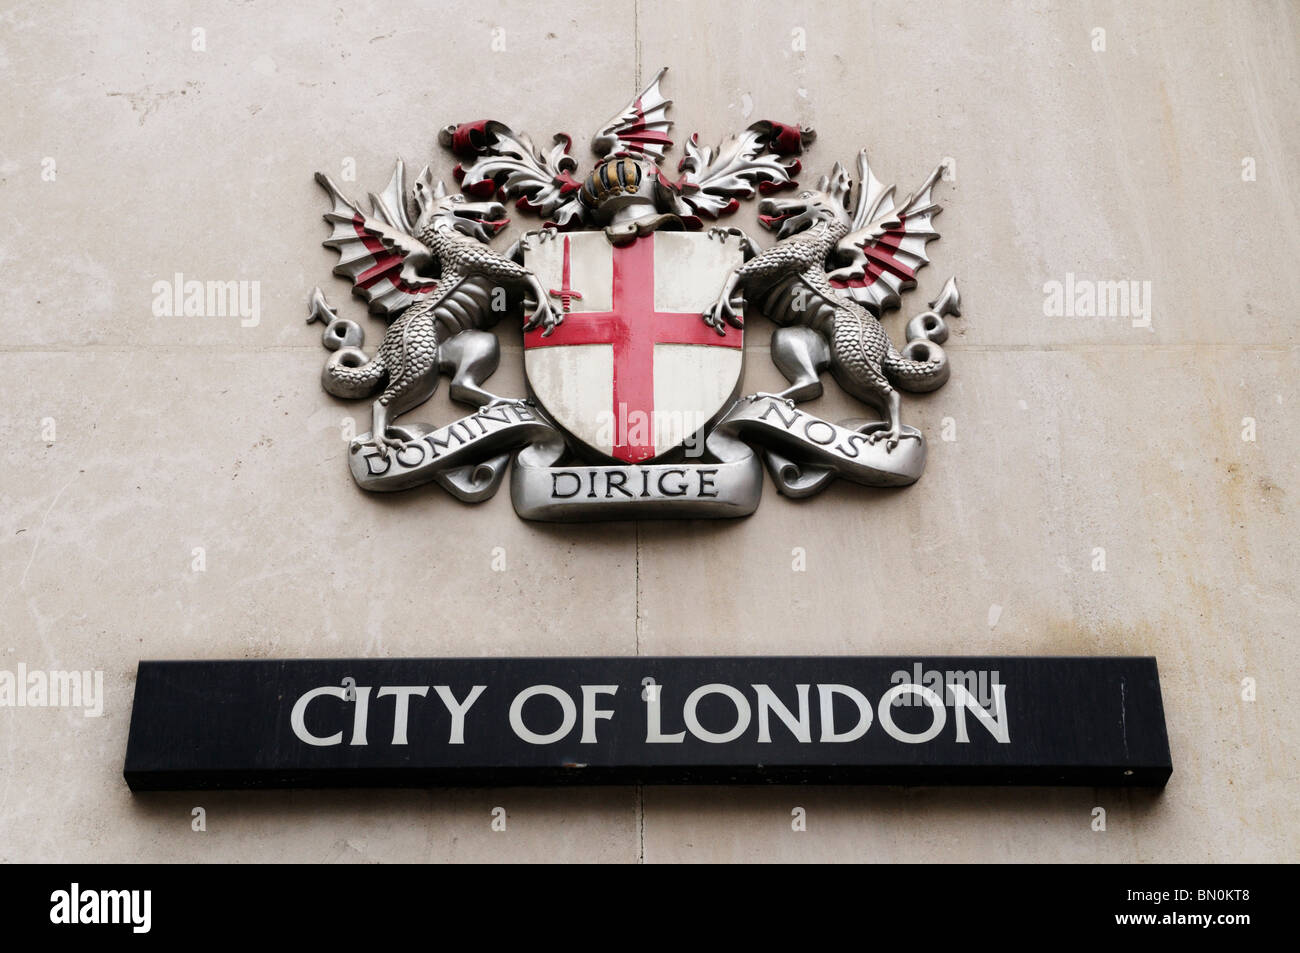 Domine Dirige Nos city of London stemma, London, England, Regno Unito Foto Stock